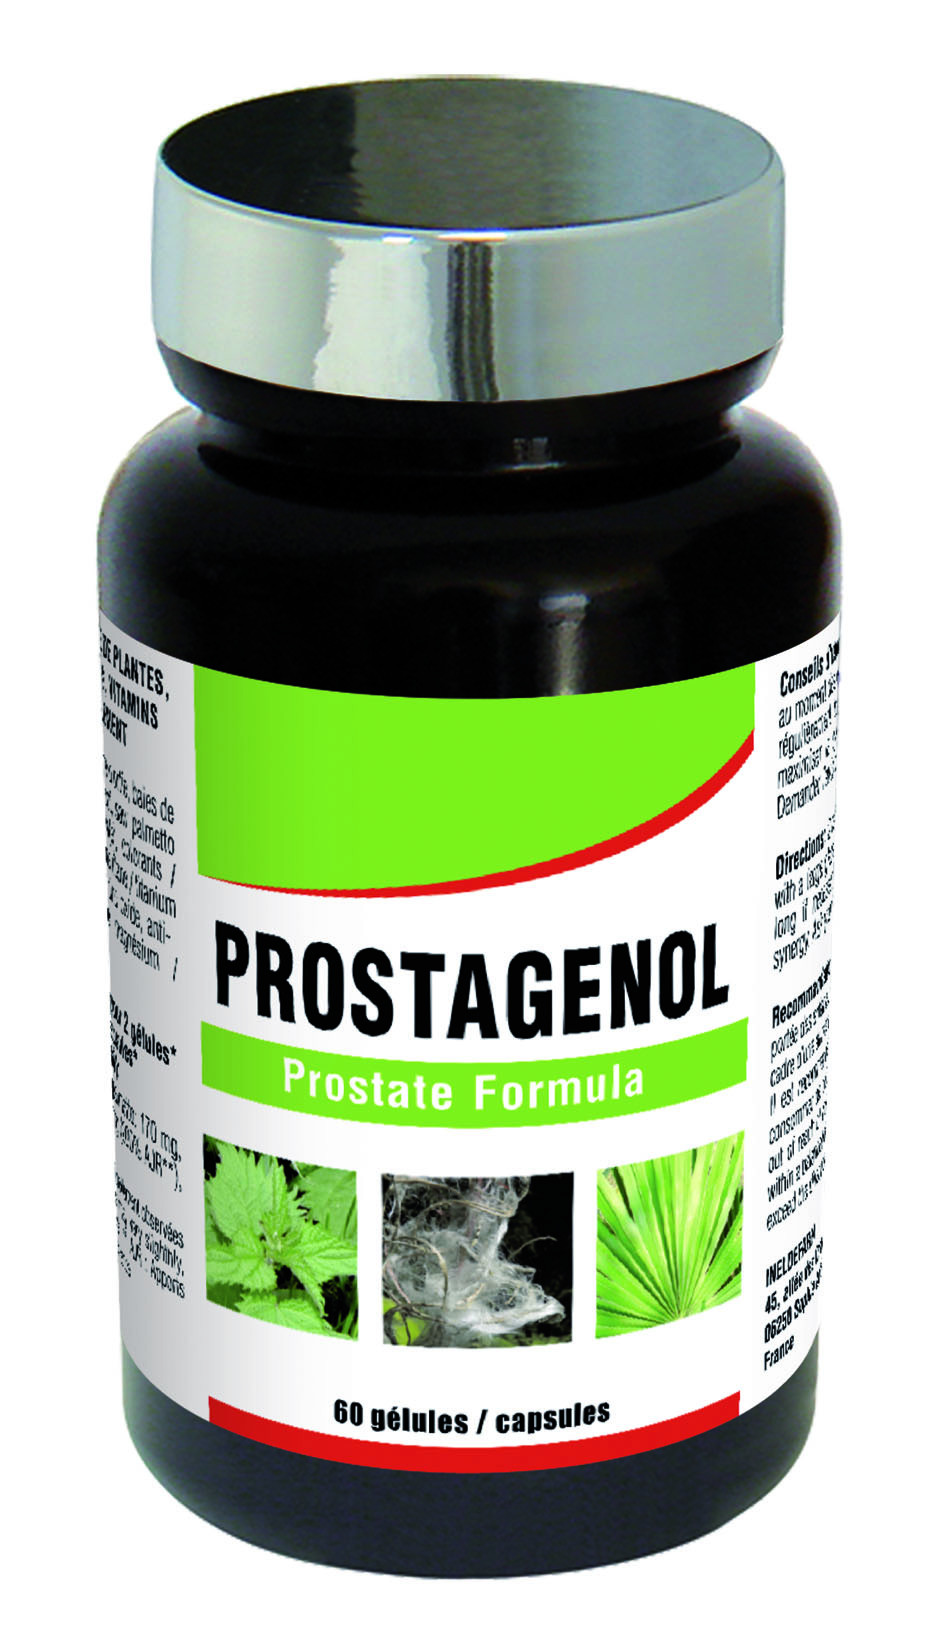 medicament prostate naturel ipertrofia prostatica e fertilità